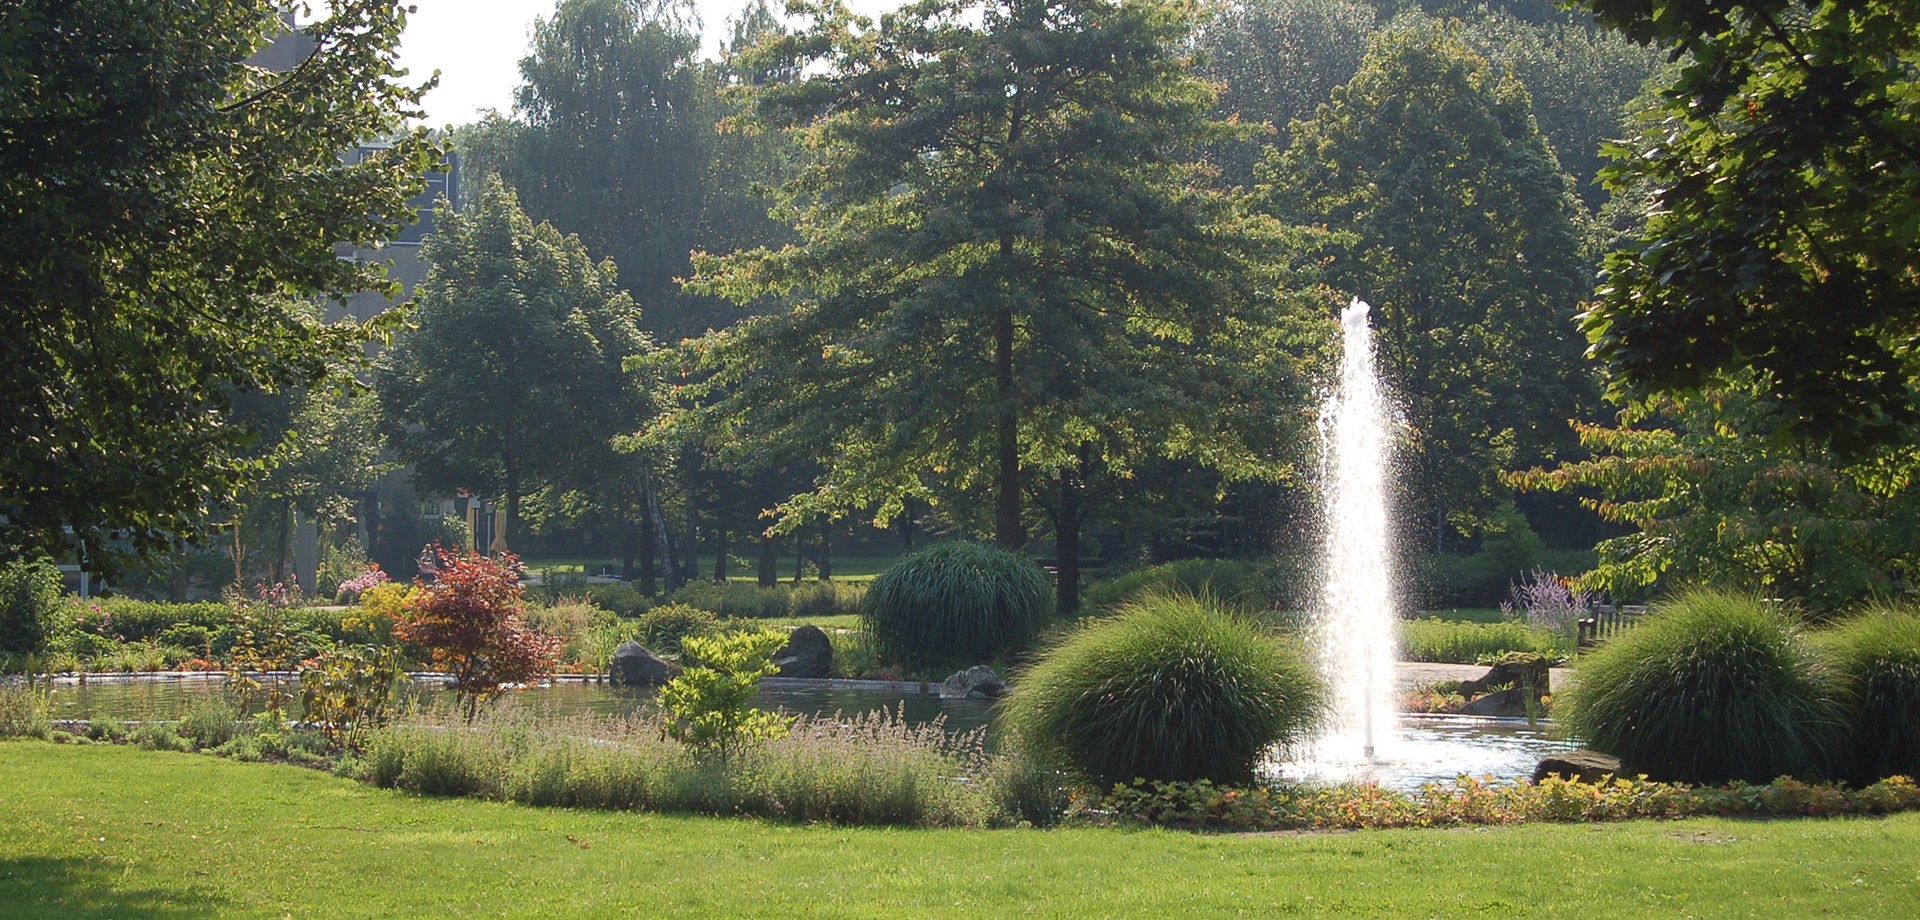 Springbrunnen mit Fontäne inmitten der grünen Parklandschaft der Klinik mit hohen Bäumen im Sommer